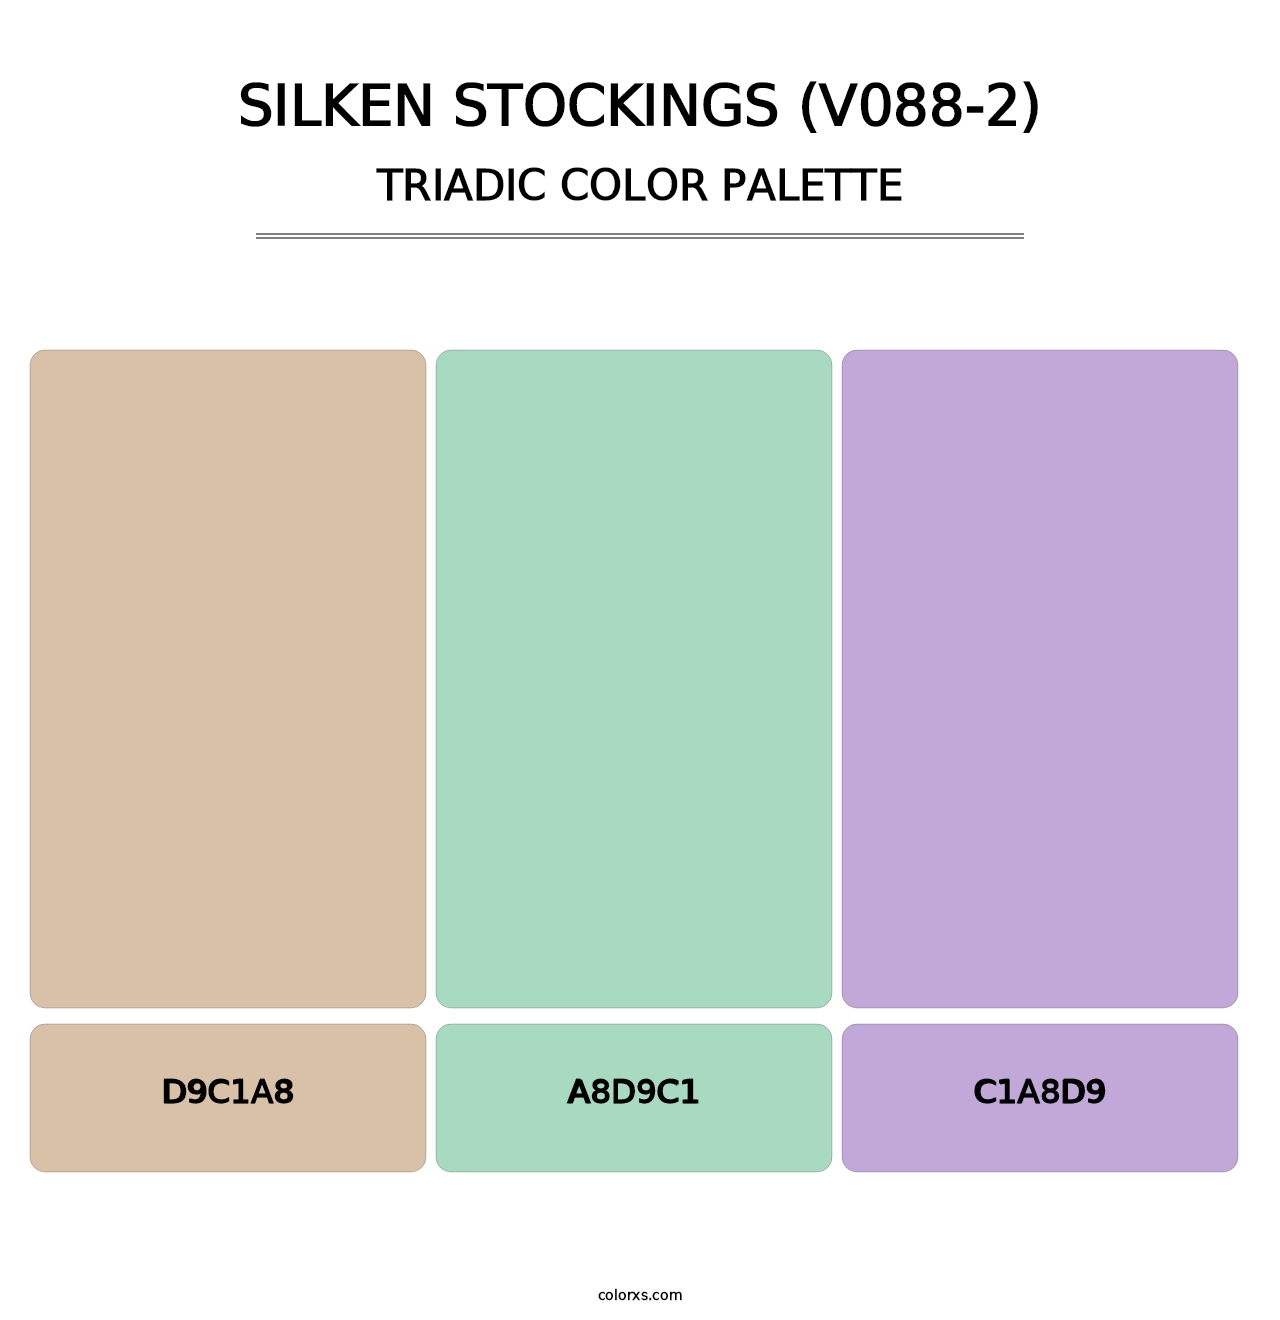 Silken Stockings (V088-2) - Triadic Color Palette